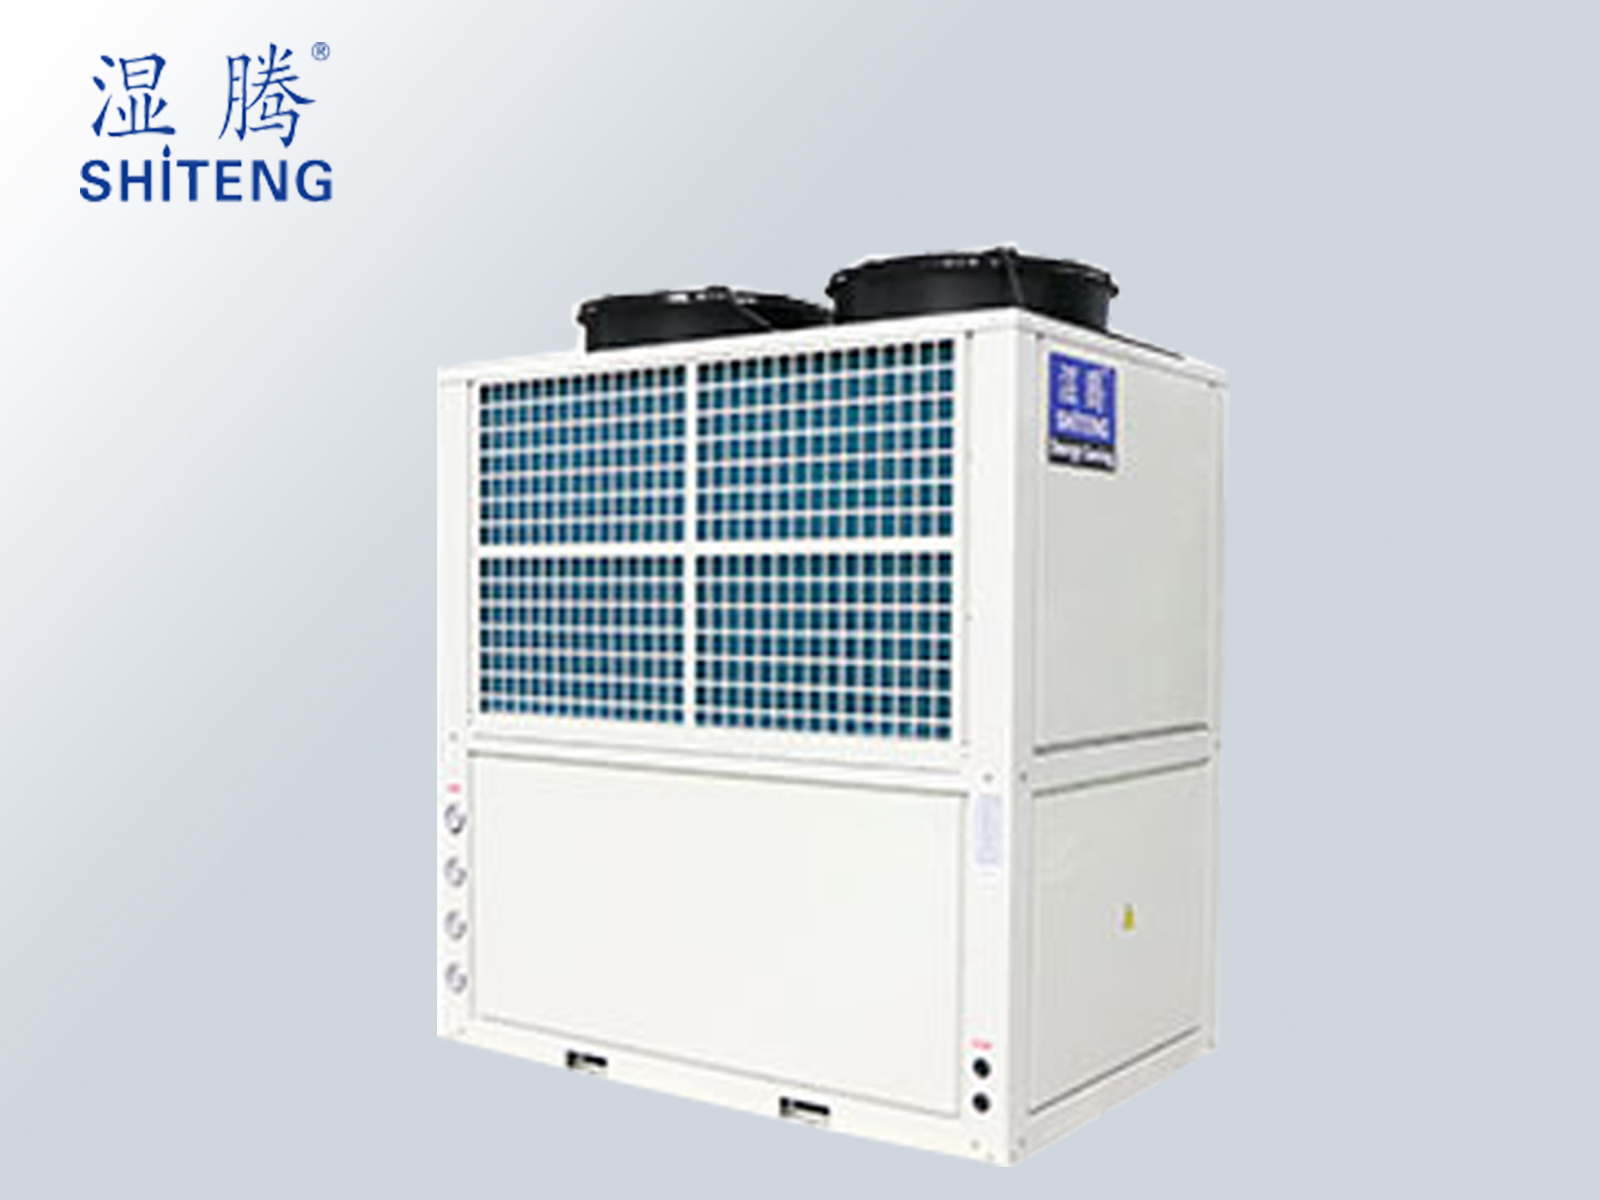 上海湿腾商用热泵热水机南方型)ST100-KFXRI系列